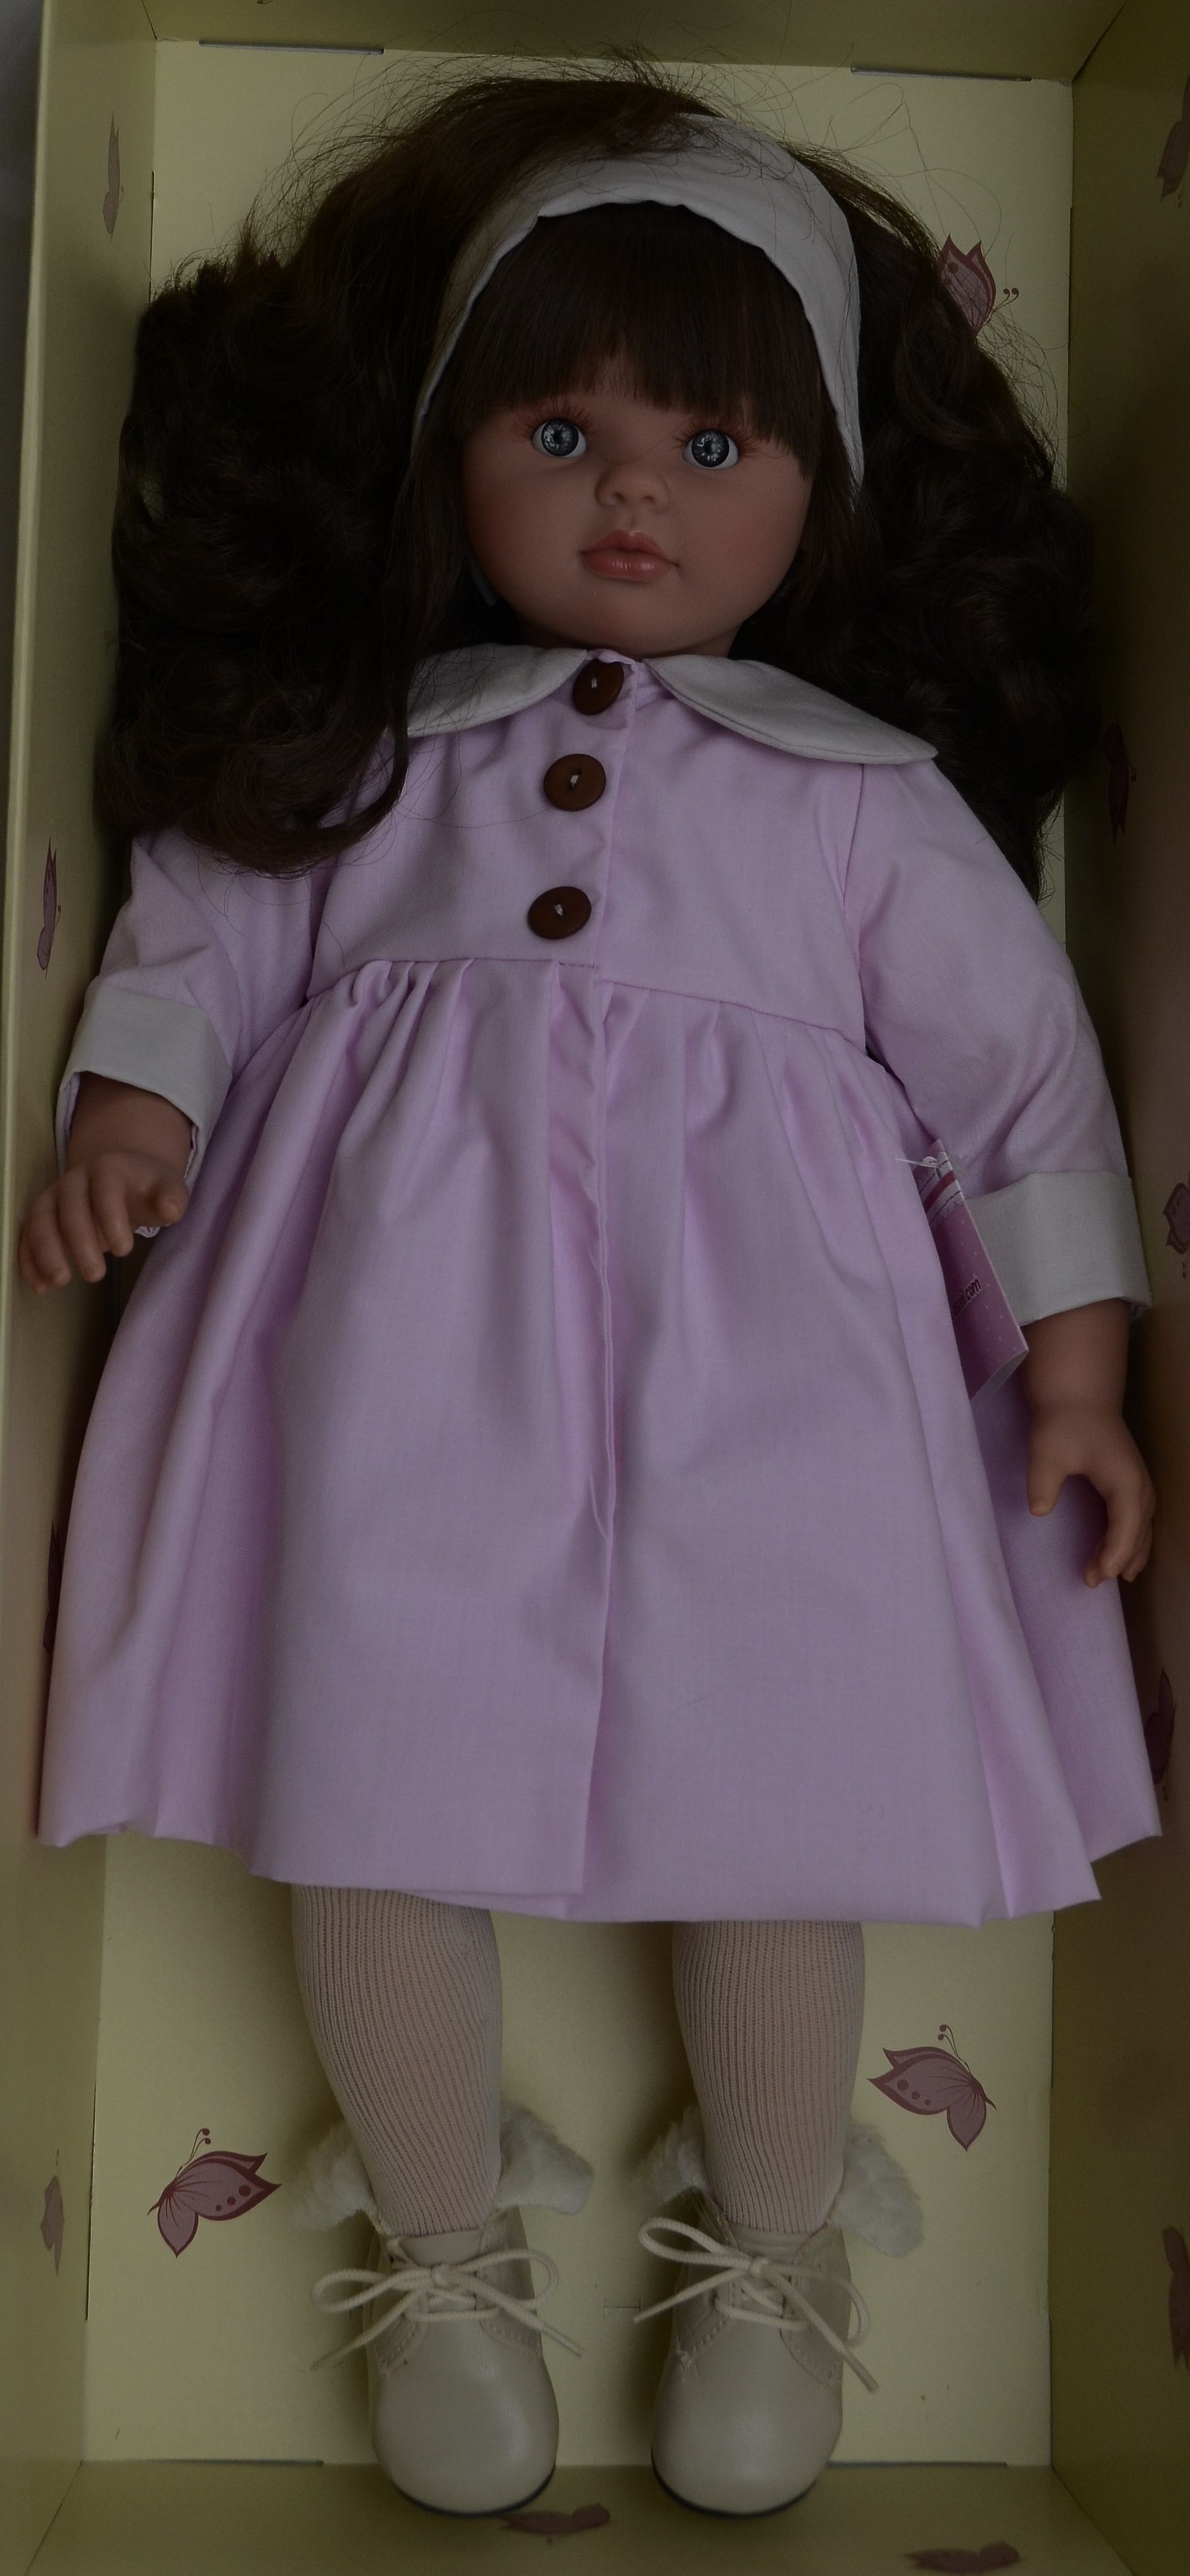 Realistická panenka PEPA - růžový kabátek - od firmy ASIVIL ze Španělska